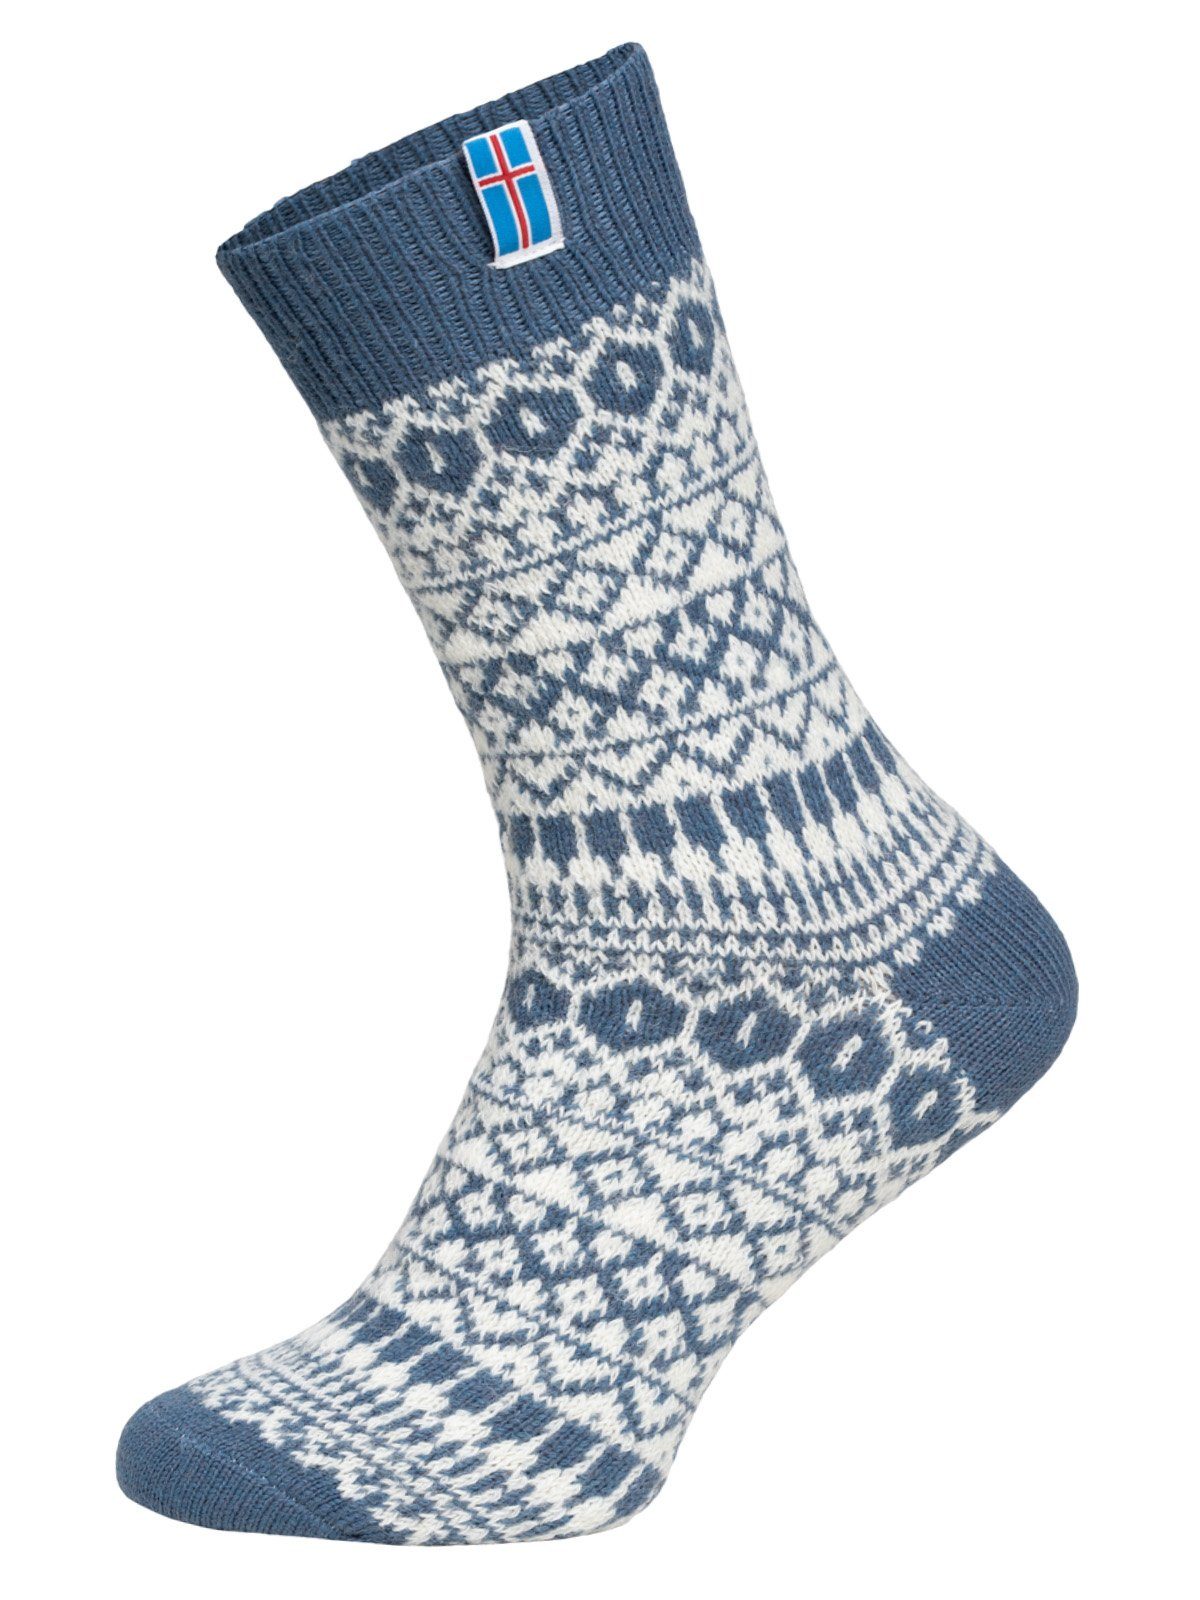 HomeOfSocks Norwegersocken Skandinavische Wollsocke "Island" Nordic Kuschelsocken Aus Wolle dünne strapazierfähige Socken mit 60% Wollanteil und Island Design Blau